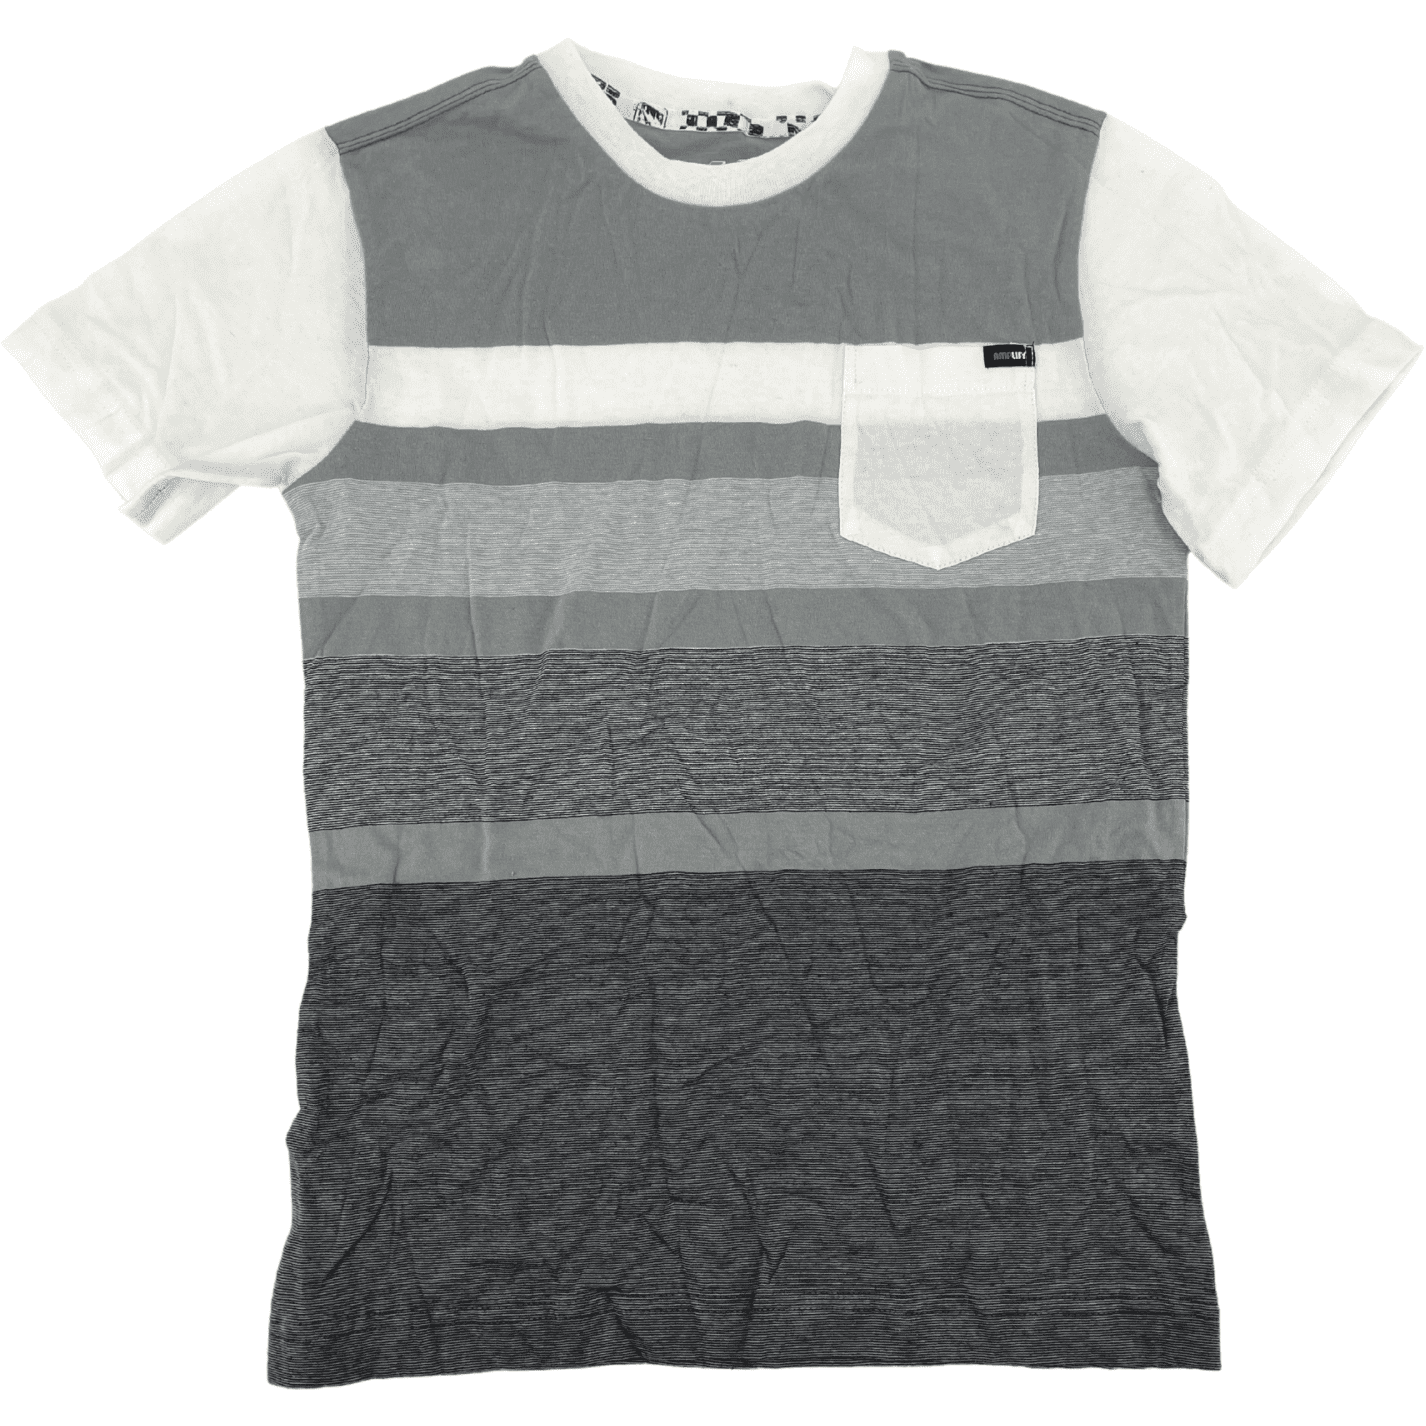 Amplify Boy's T-Shirt / Stripes / Grey & White / Size Medium